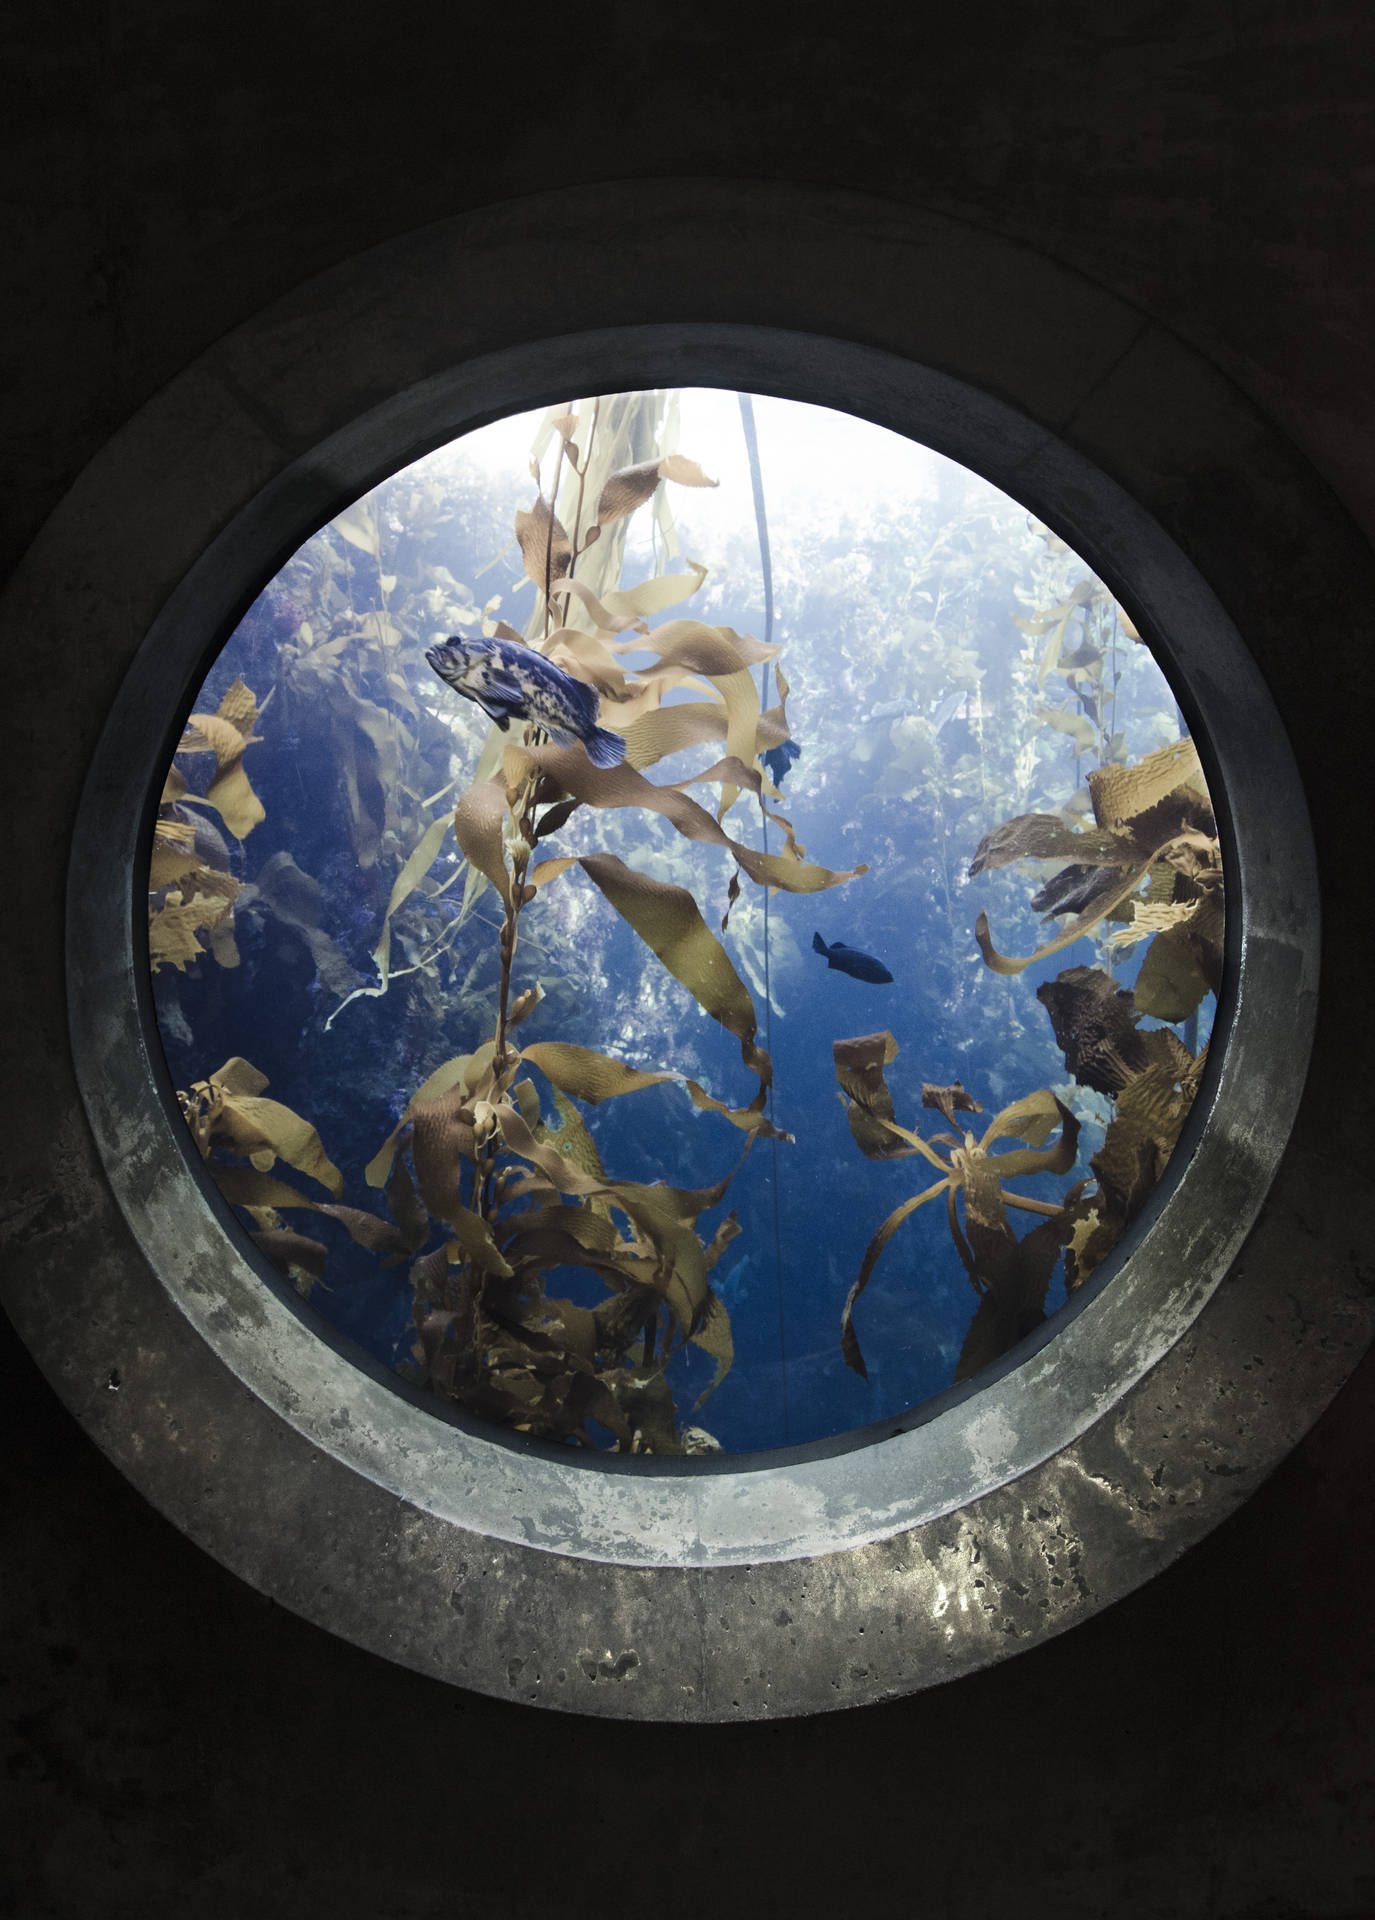 Aquariumfenster Oben Iphone Wallpaper